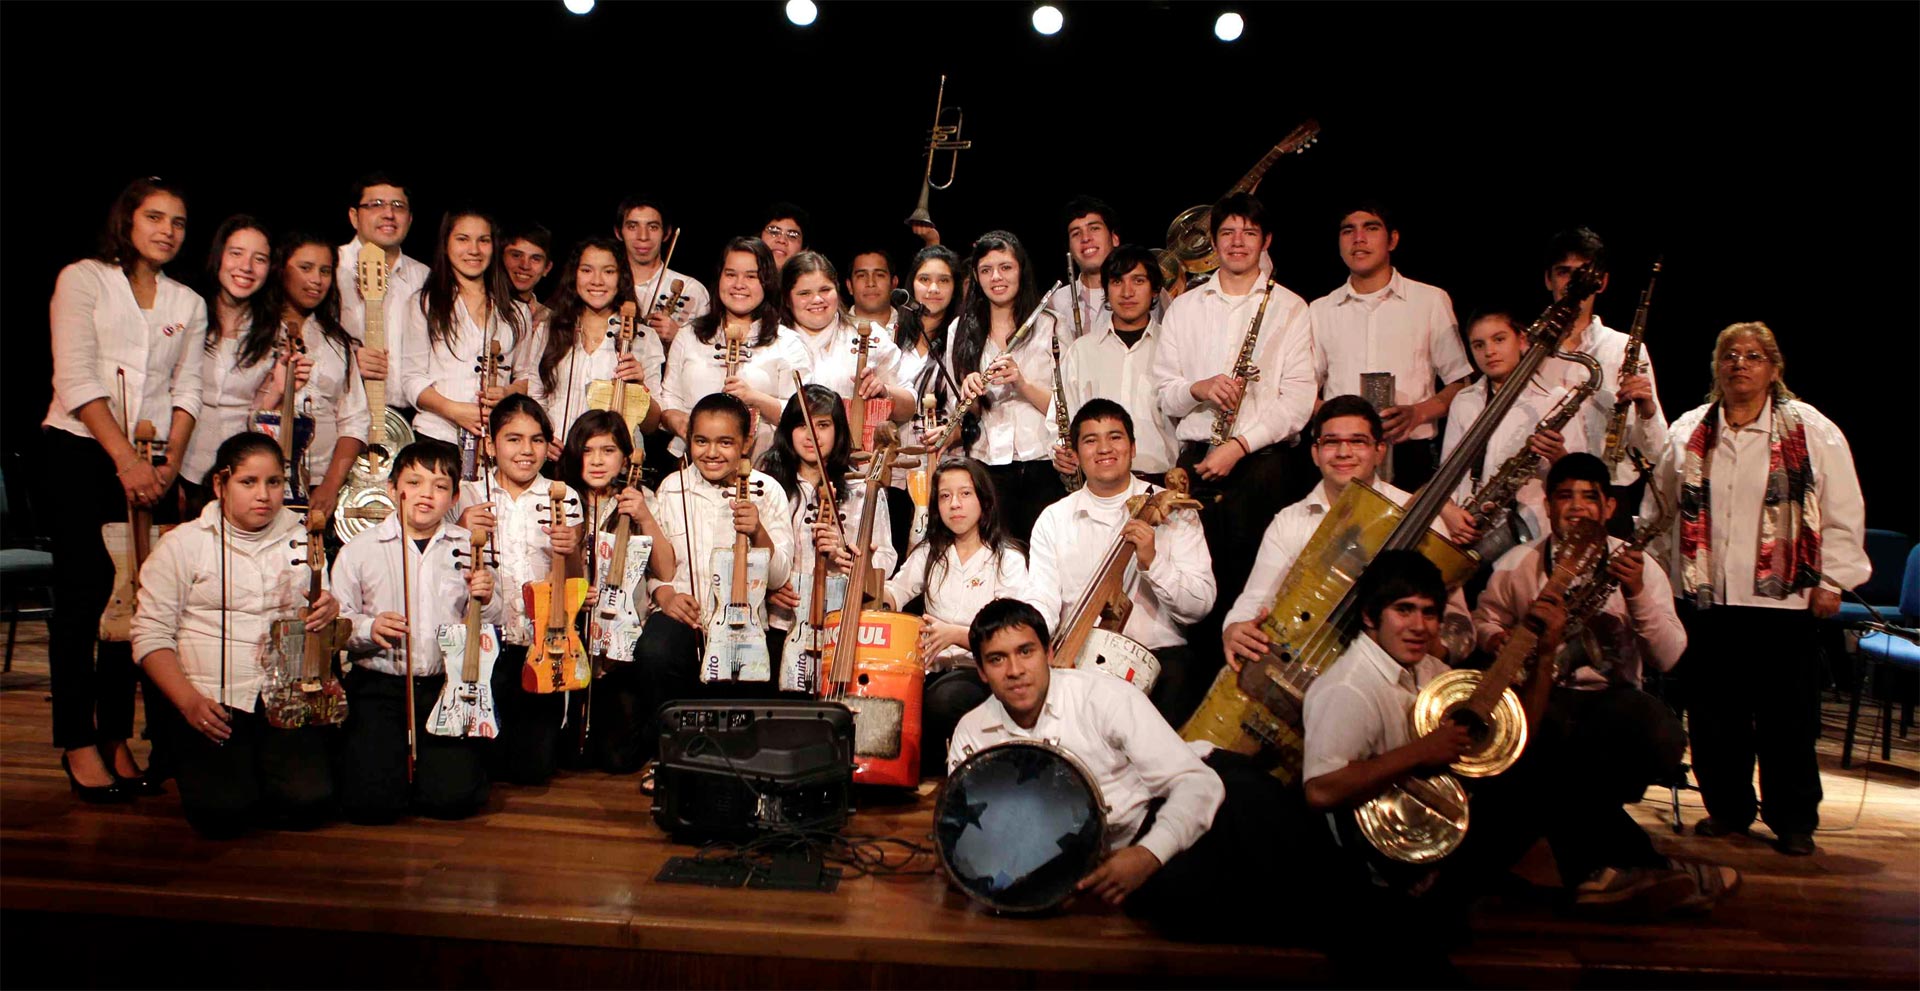 En Paraguay se ha conformado una orquesta que busca fomentar la formación de mejores ciudadanos